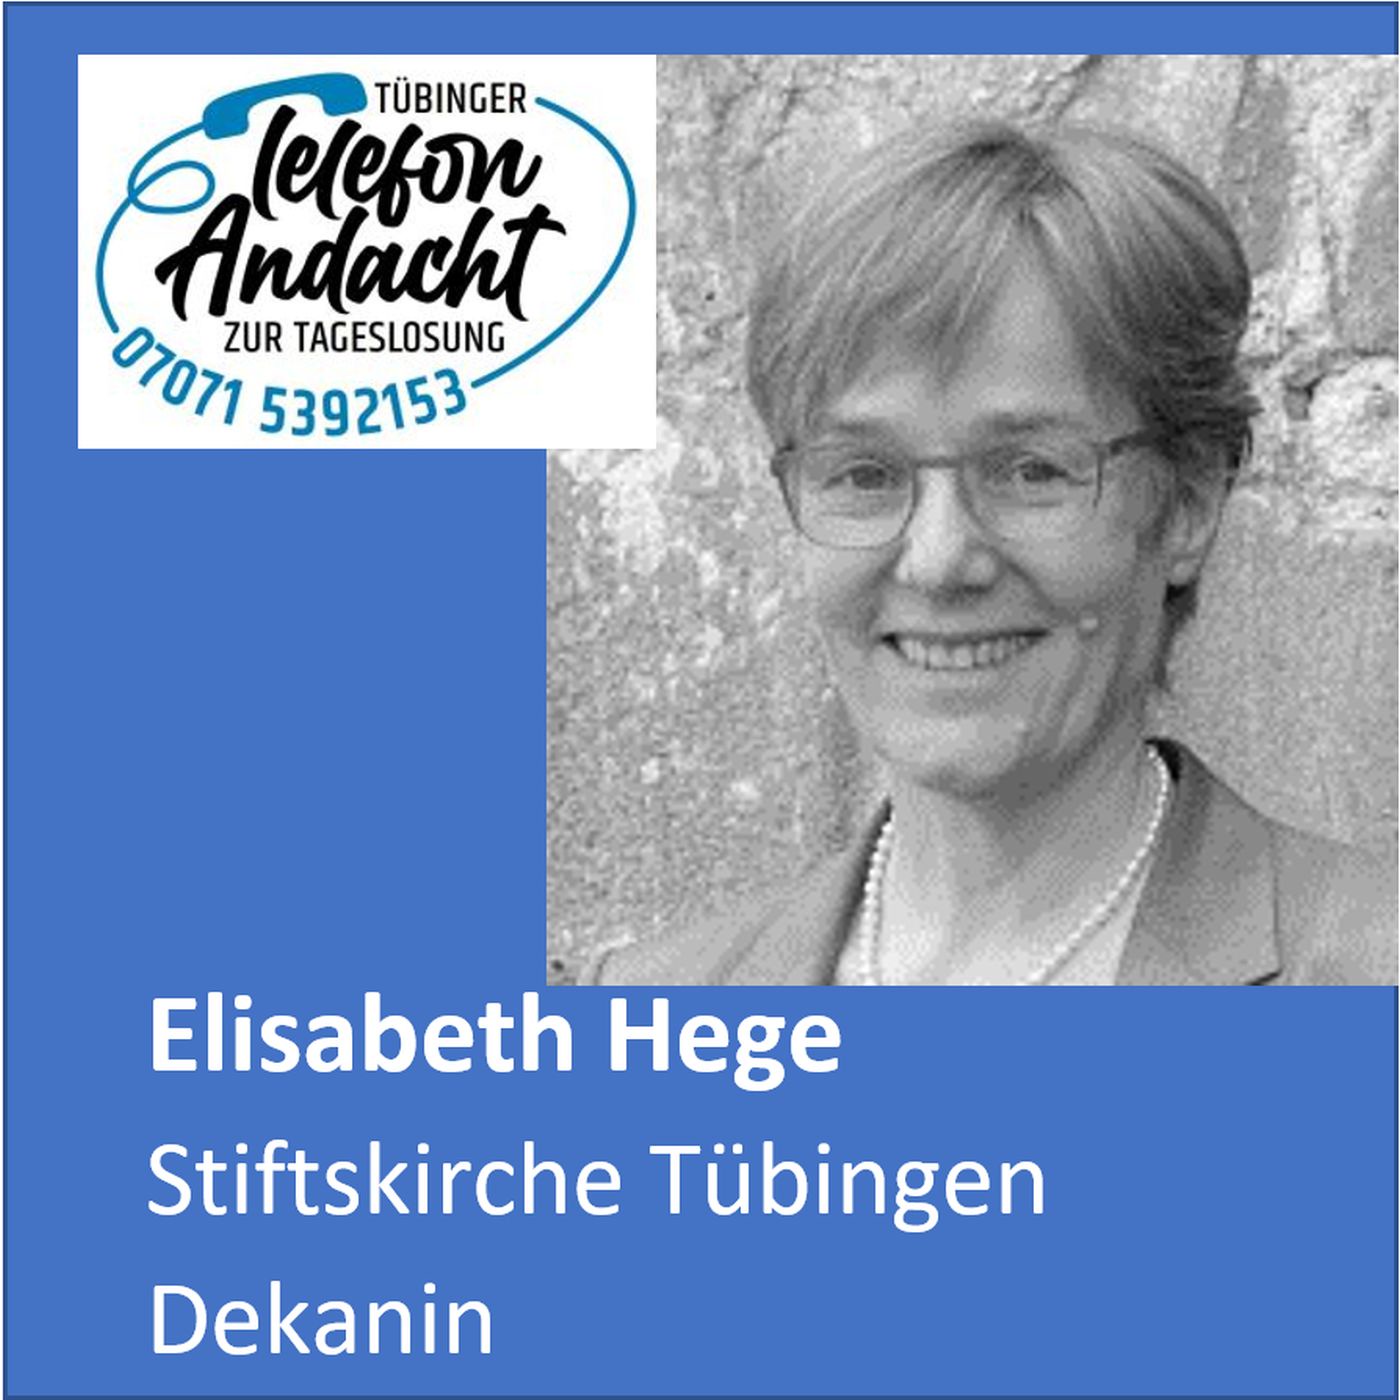 24 05 01 Elisabeth Hege